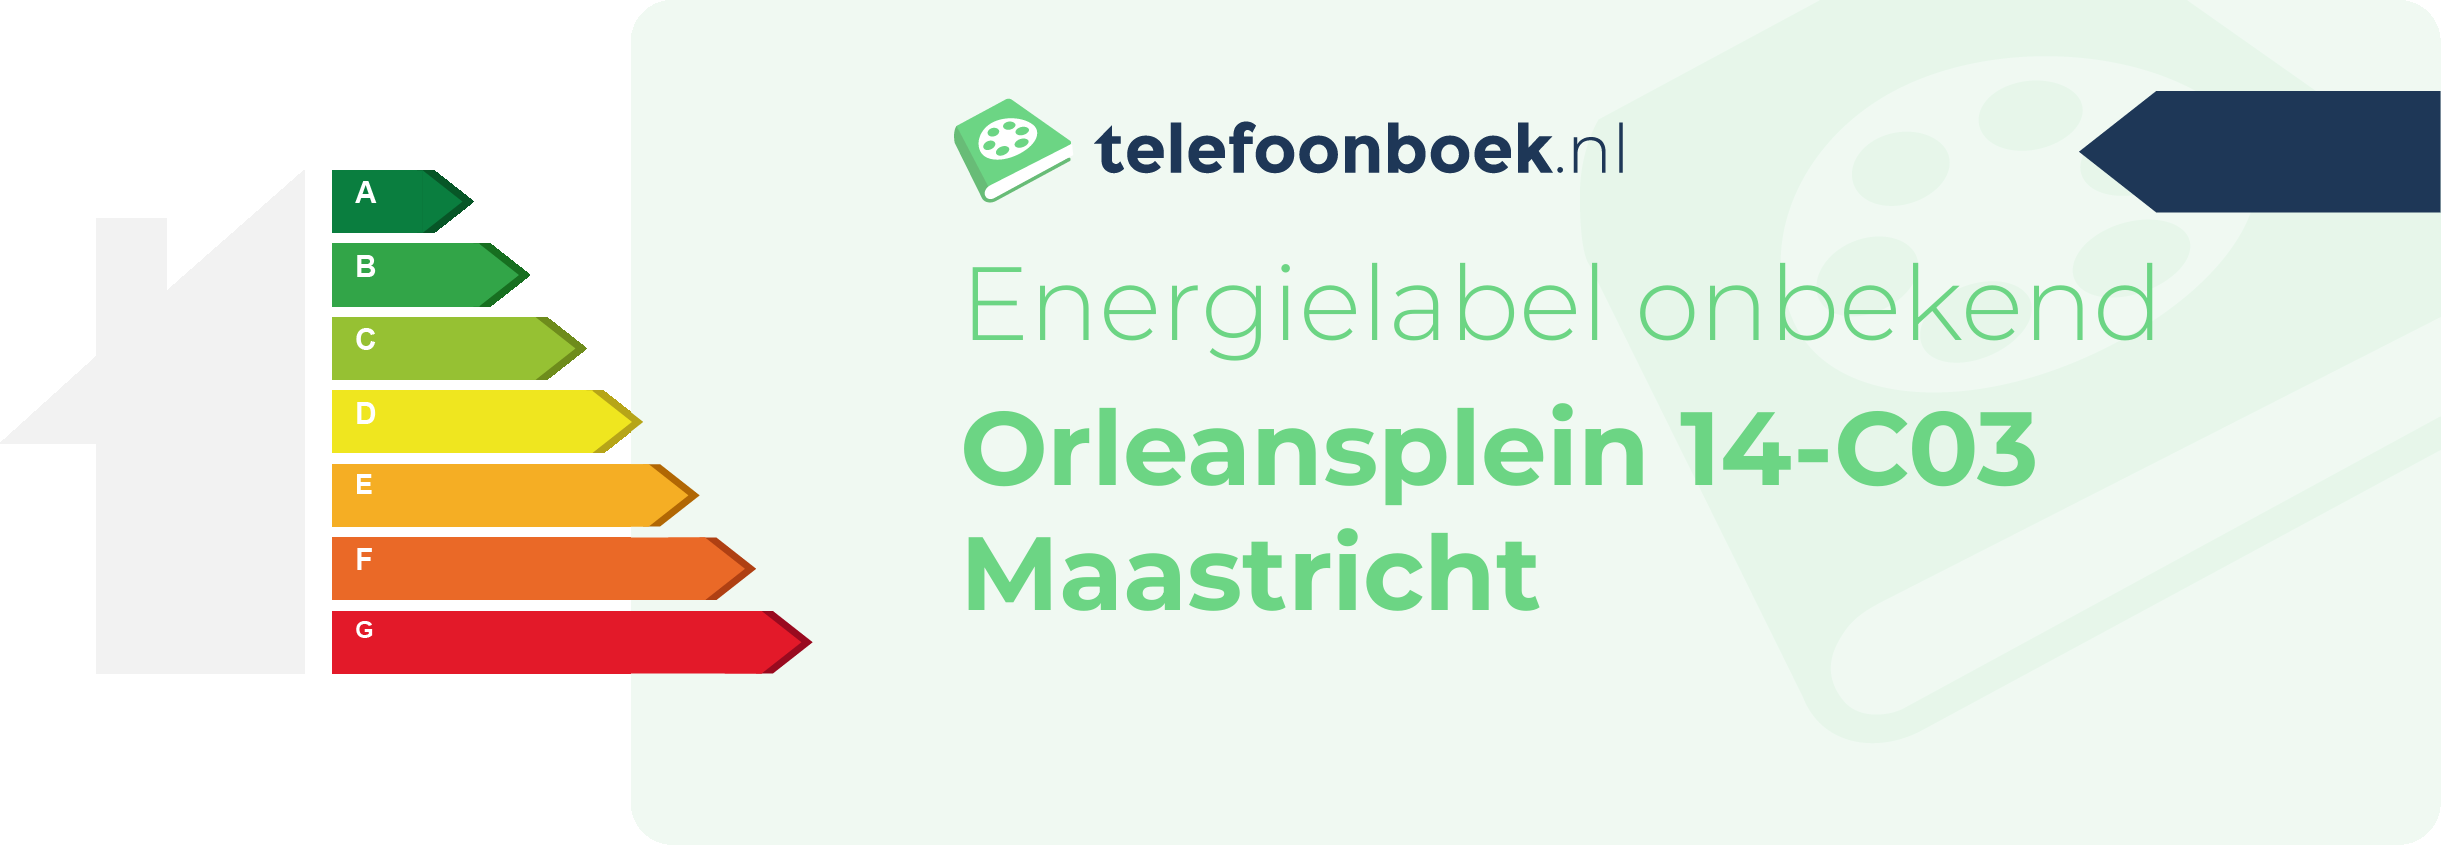 Energielabel Orleansplein 14-C03 Maastricht